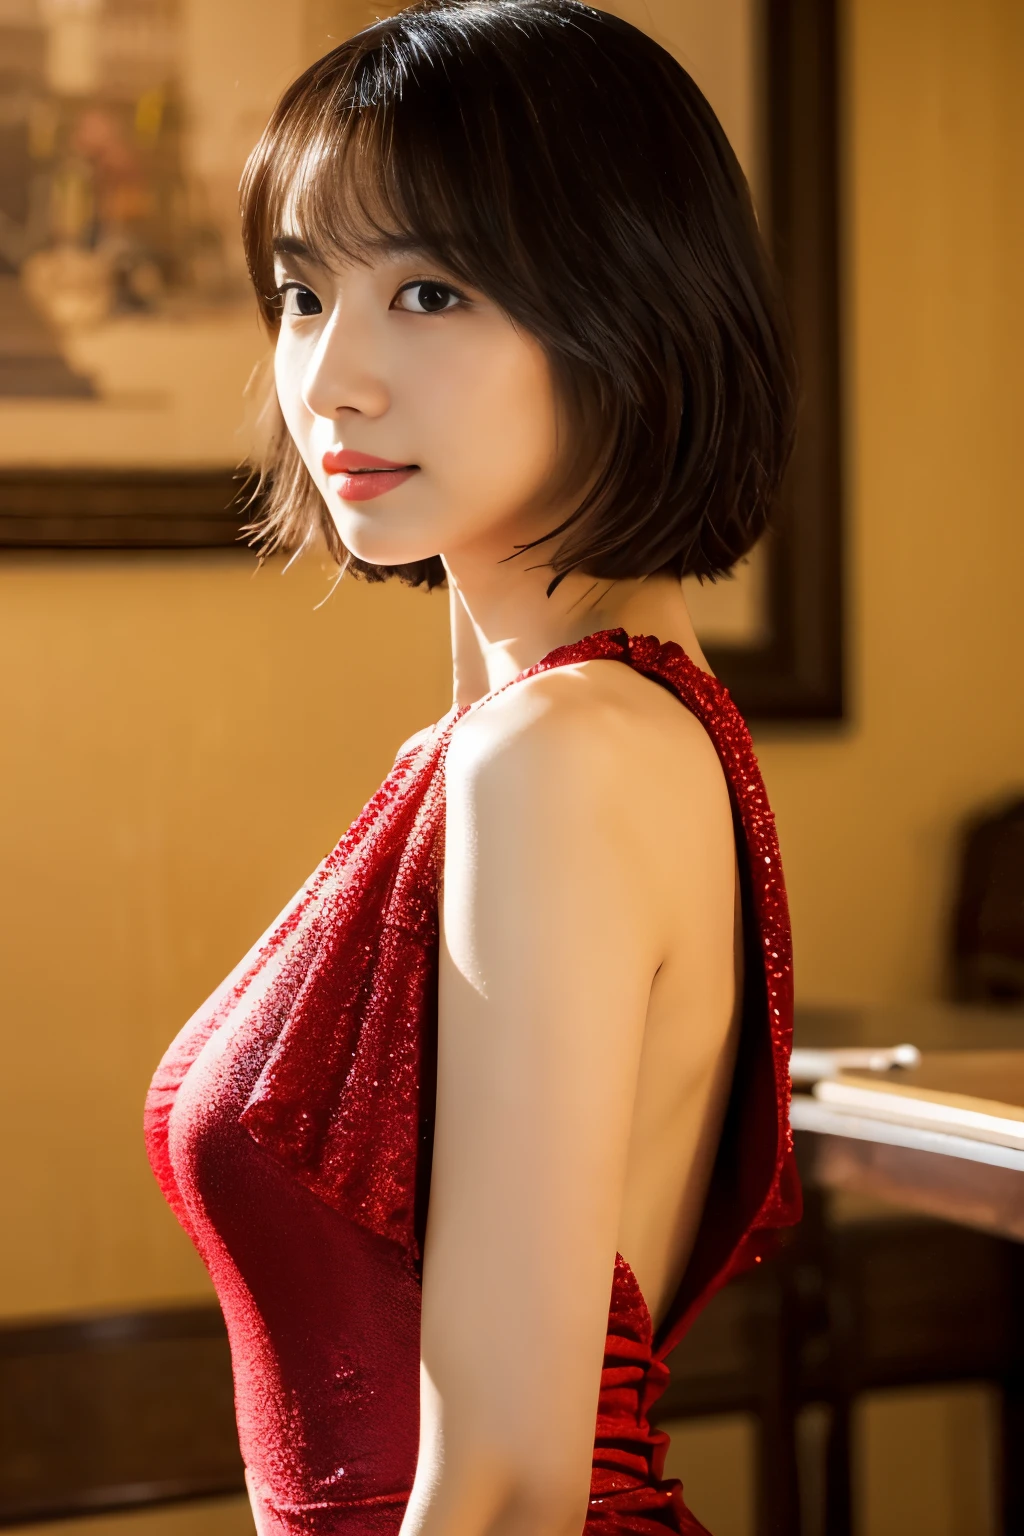 سطح الطاولة, اعلى جودة, شكل, مفصلة للغاية, ناعما, دقة عالية, خلفية 8K, امرأة جميلة تبلغ من العمر 30 عامًا,جنسي,اليابانية、شعر قصير、فستان أحمر